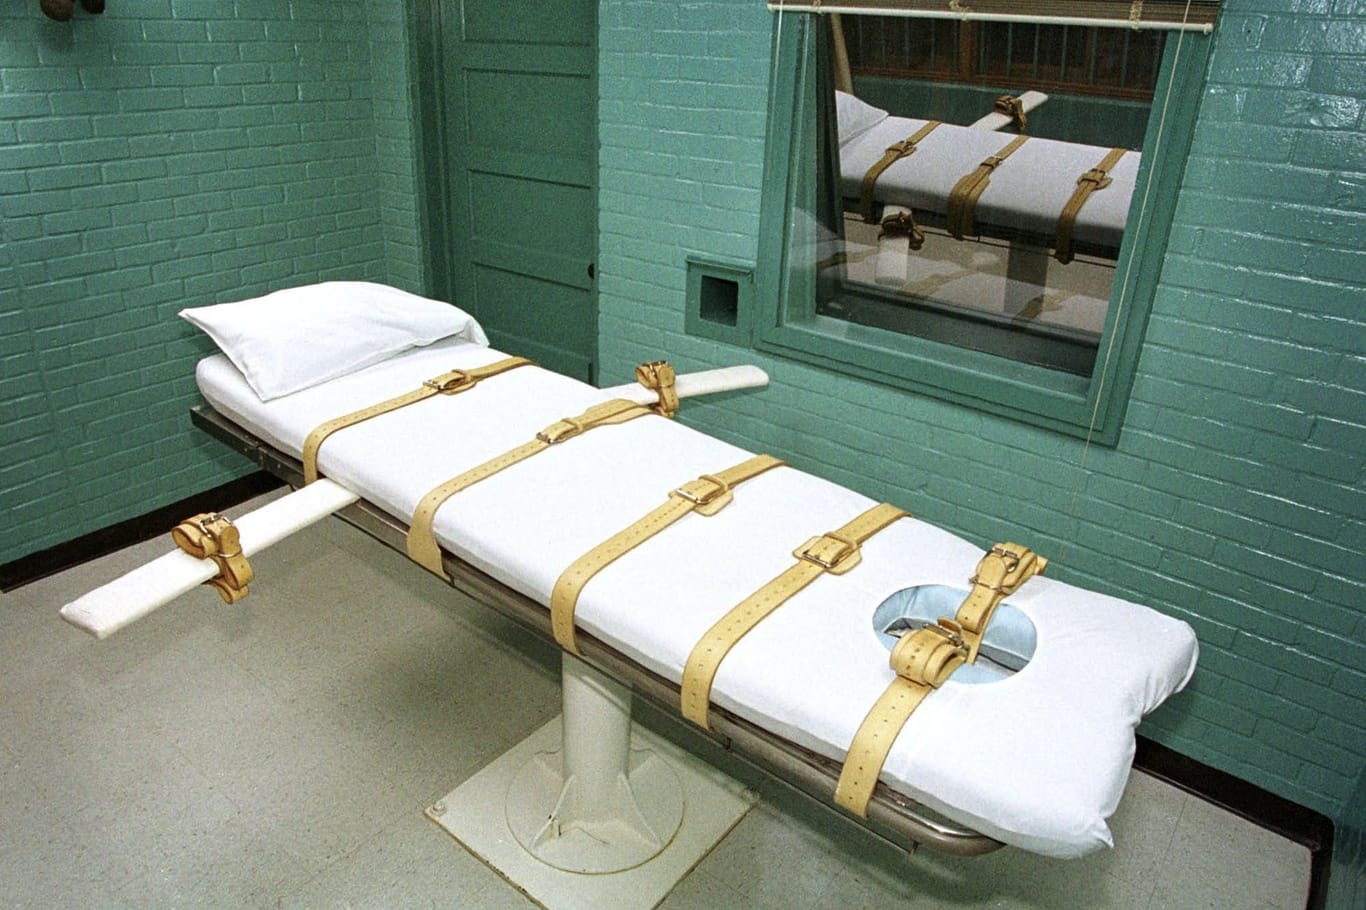 Todeszelle des berüchtigten Huntsville-Gefängnisses